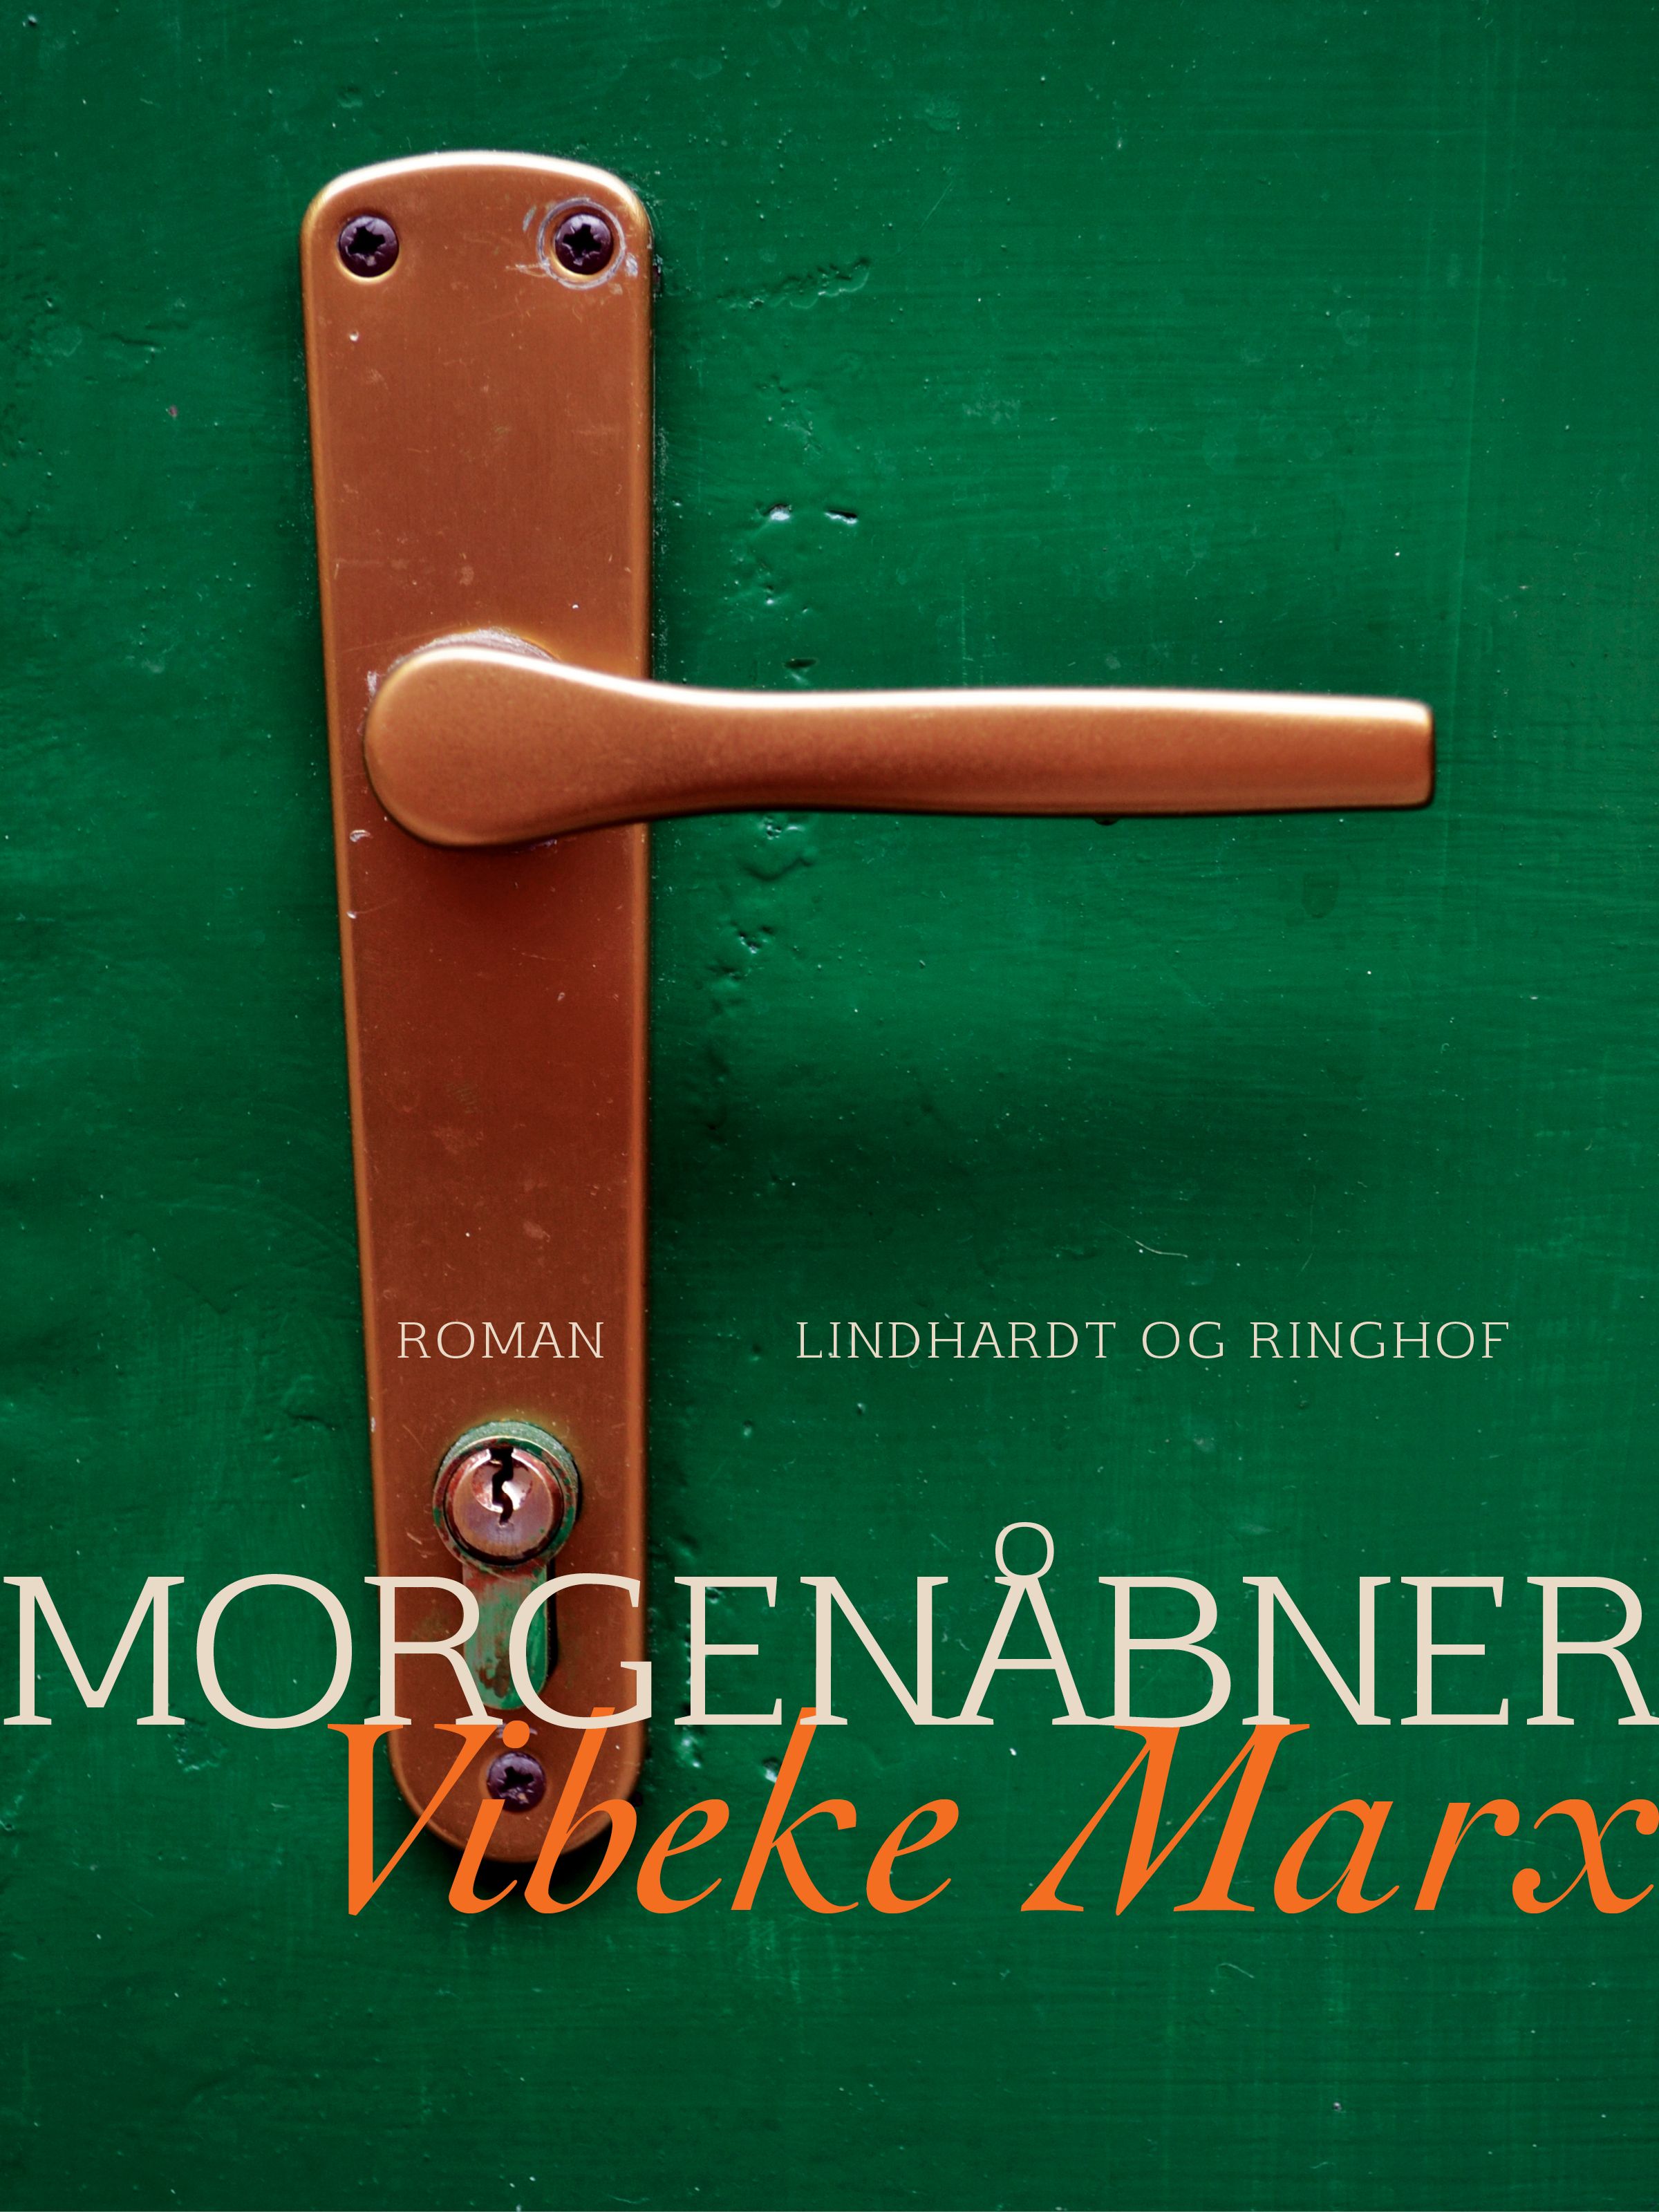 Morgenåbner, ljudbok av Vibeke Marx